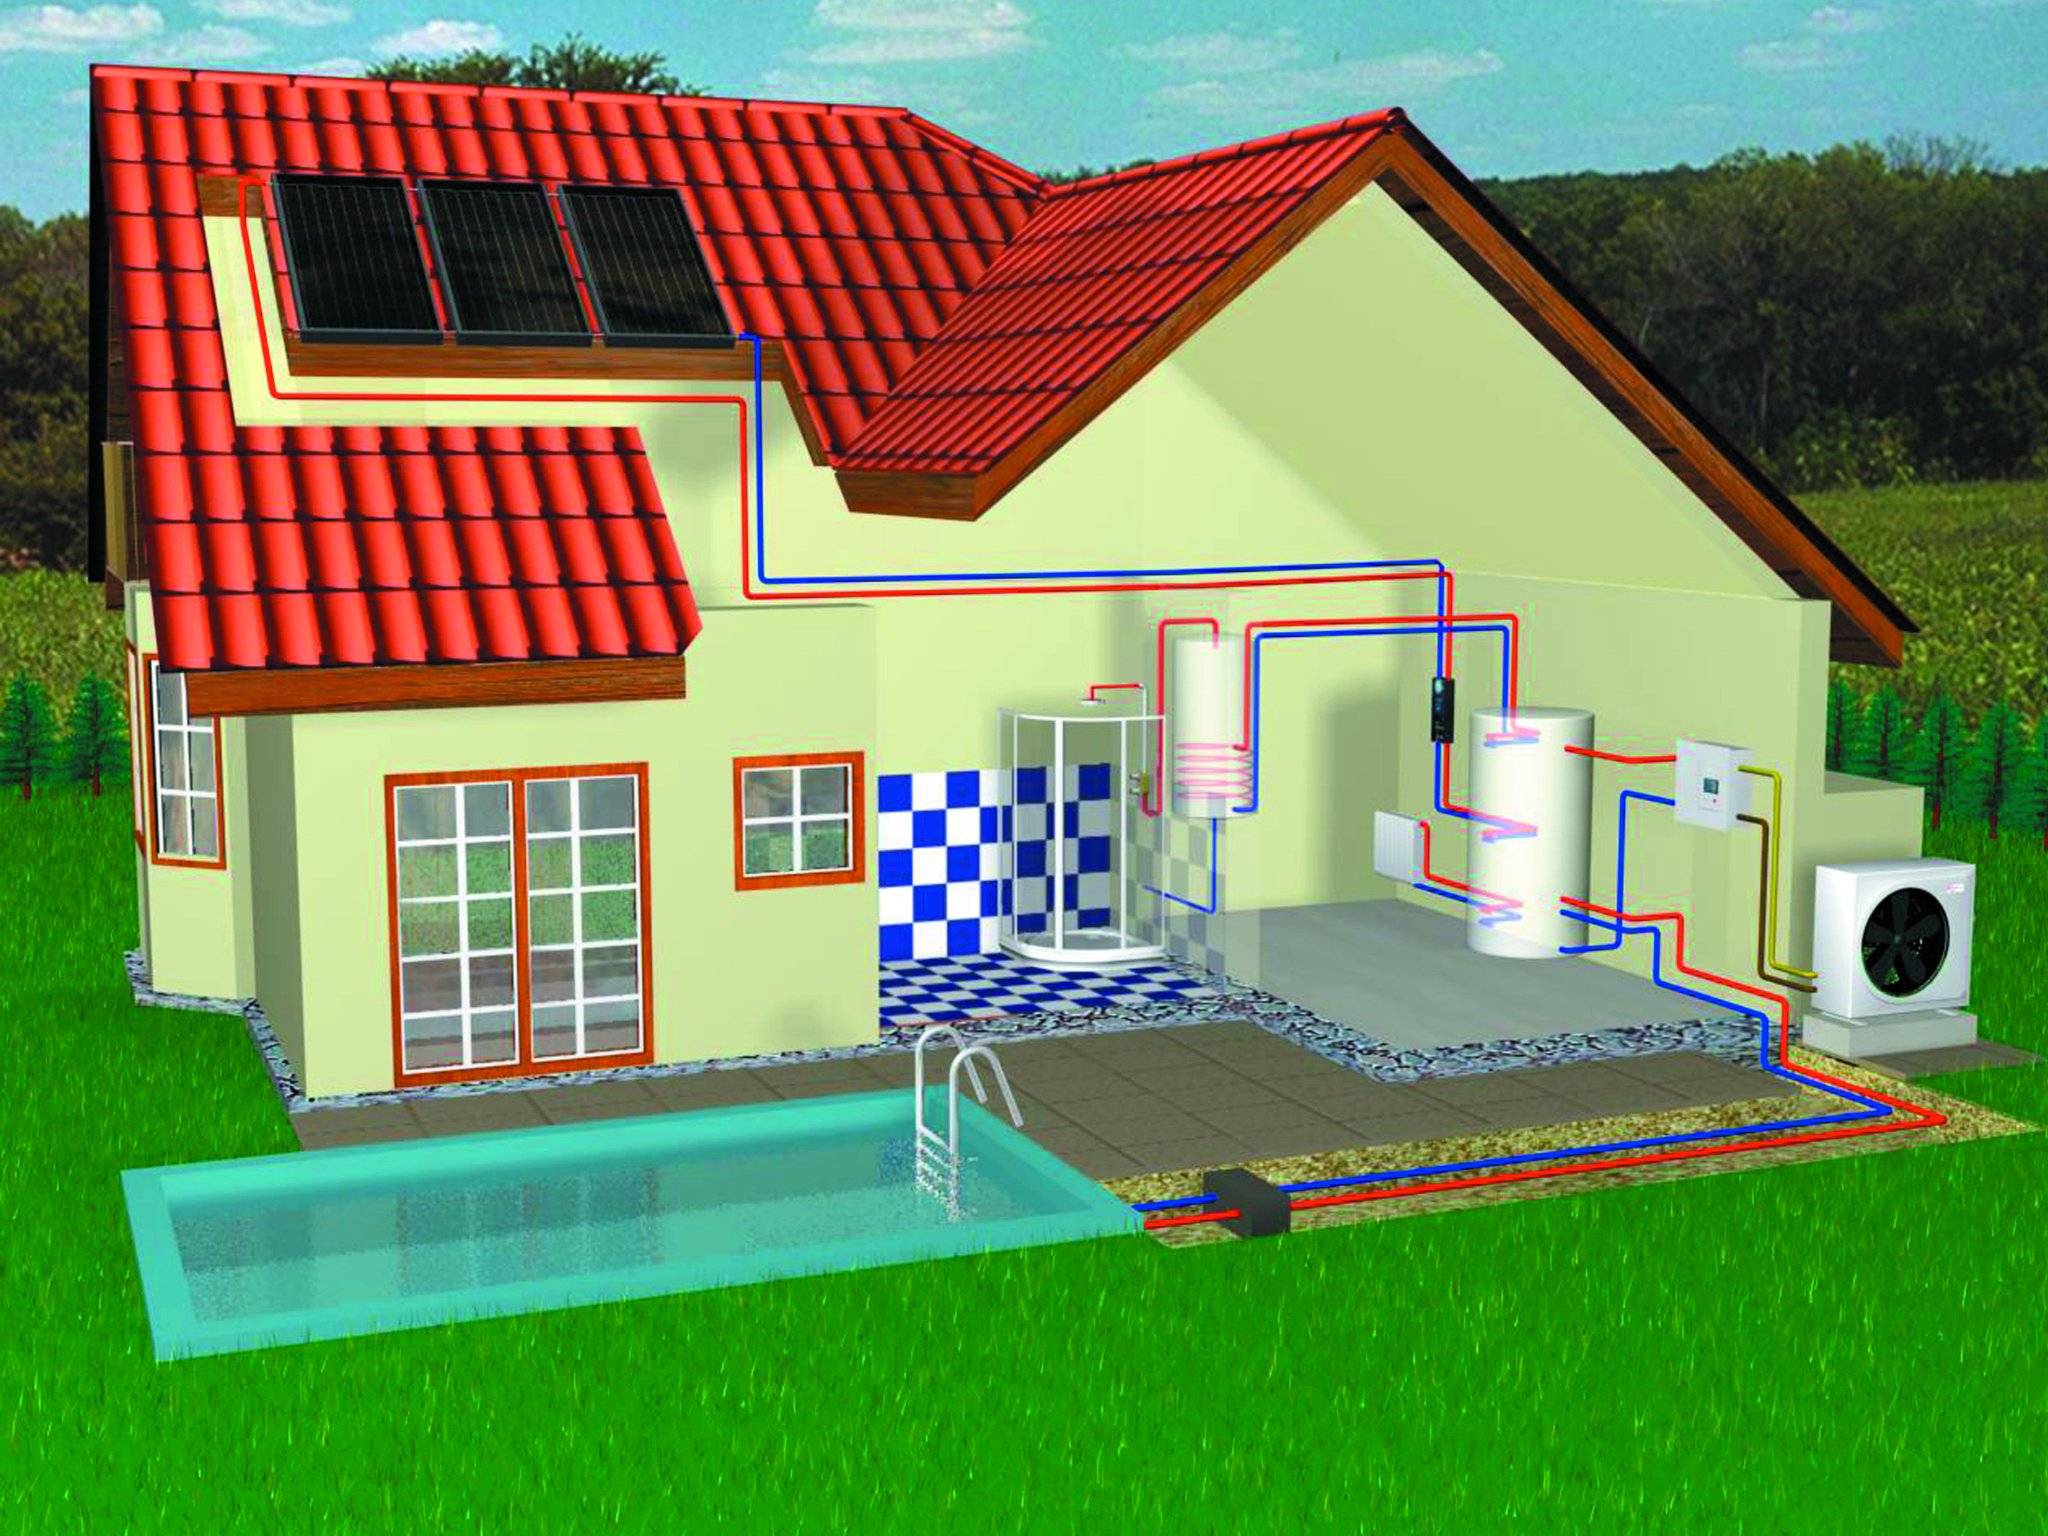 Энергосберегающее отопление: повышение энергоэффективности частного дома, системы управления